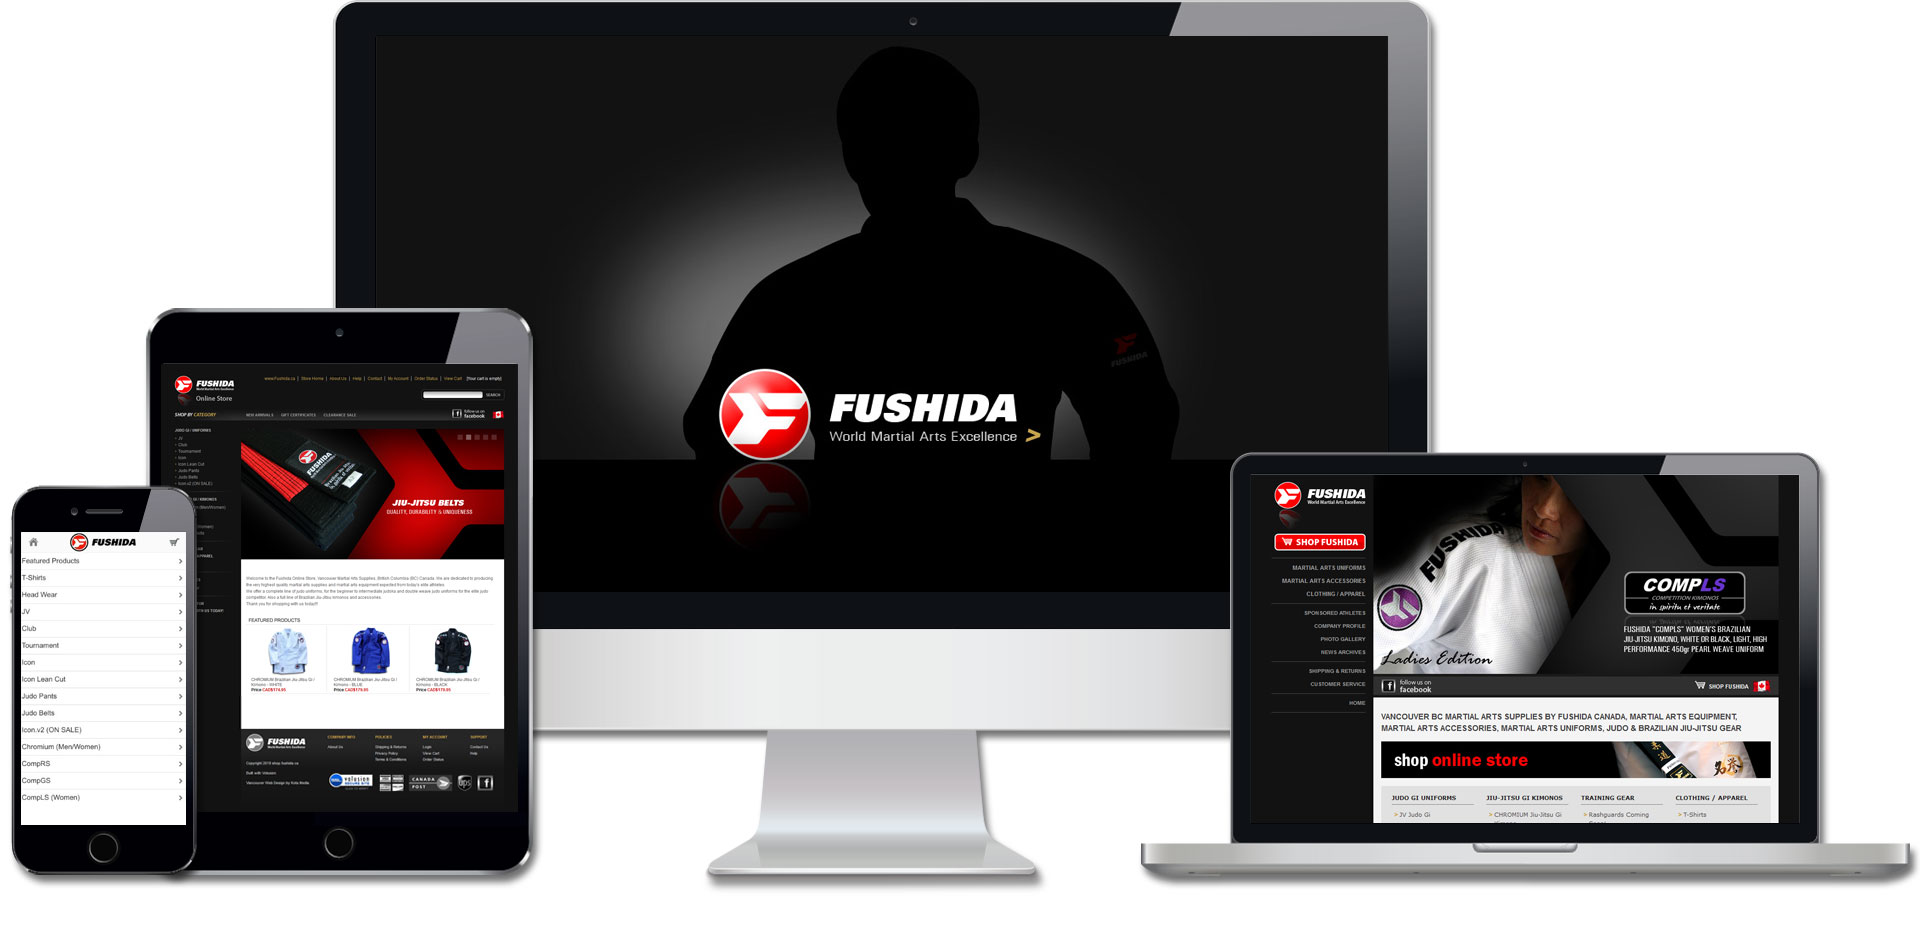 Fushida Martial Arts Supplies Website